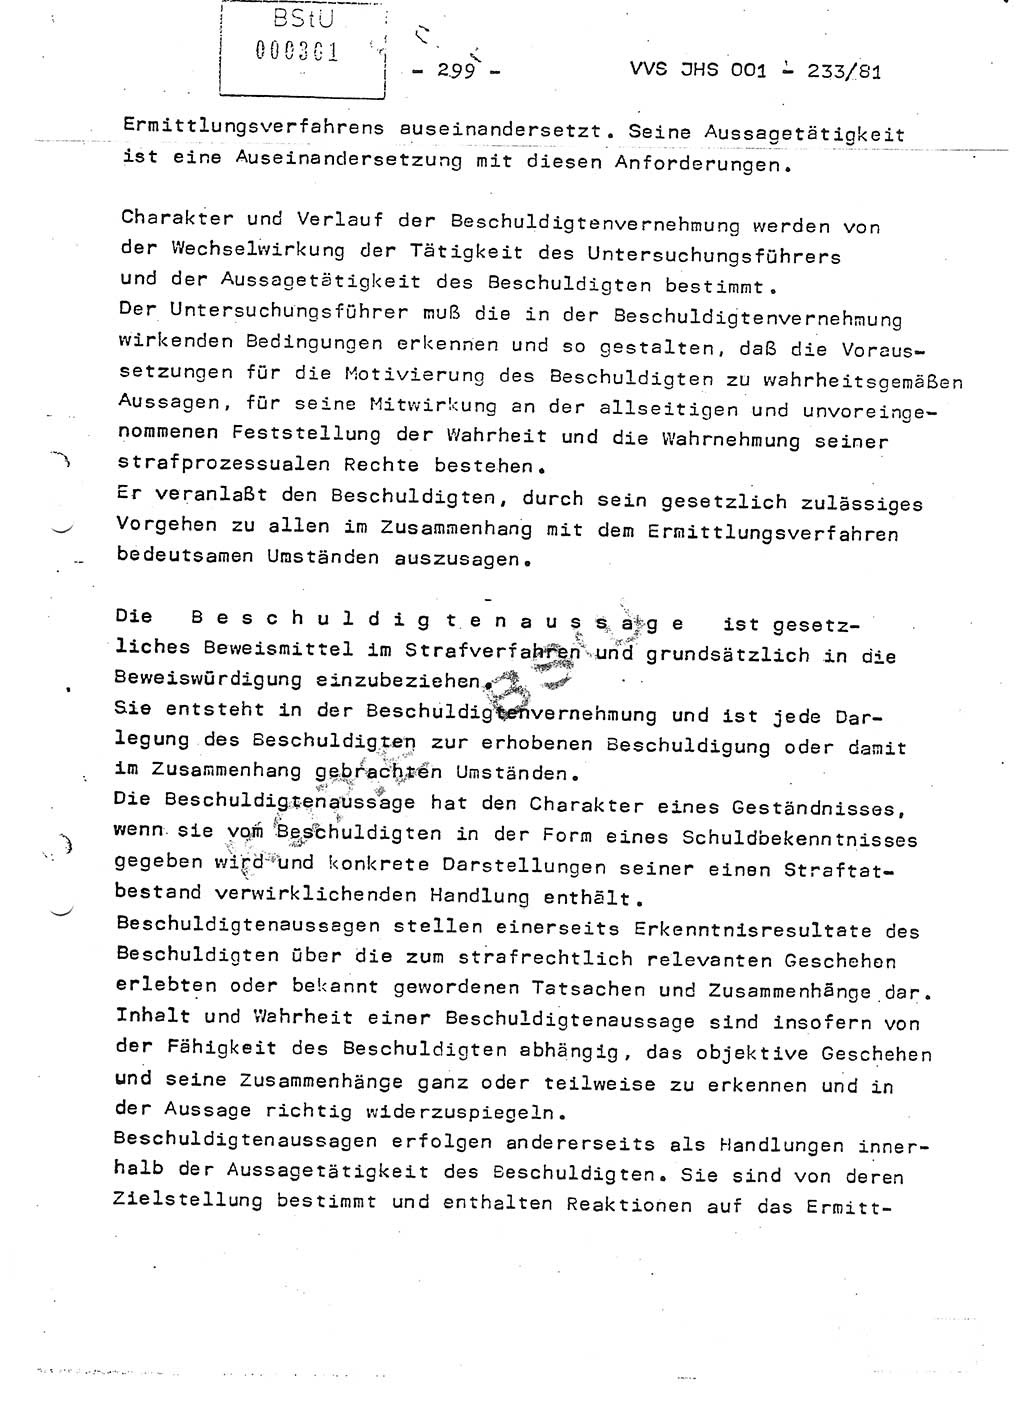 Dissertation Oberstleutnant Horst Zank (JHS), Oberstleutnant Dr. Karl-Heinz Knoblauch (JHS), Oberstleutnant Gustav-Adolf Kowalewski (HA Ⅸ), Oberstleutnant Wolfgang Plötner (HA Ⅸ), Ministerium für Staatssicherheit (MfS) [Deutsche Demokratische Republik (DDR)], Juristische Hochschule (JHS), Vertrauliche Verschlußsache (VVS) o001-233/81, Potsdam 1981, Blatt 299 (Diss. MfS DDR JHS VVS o001-233/81 1981, Bl. 299)